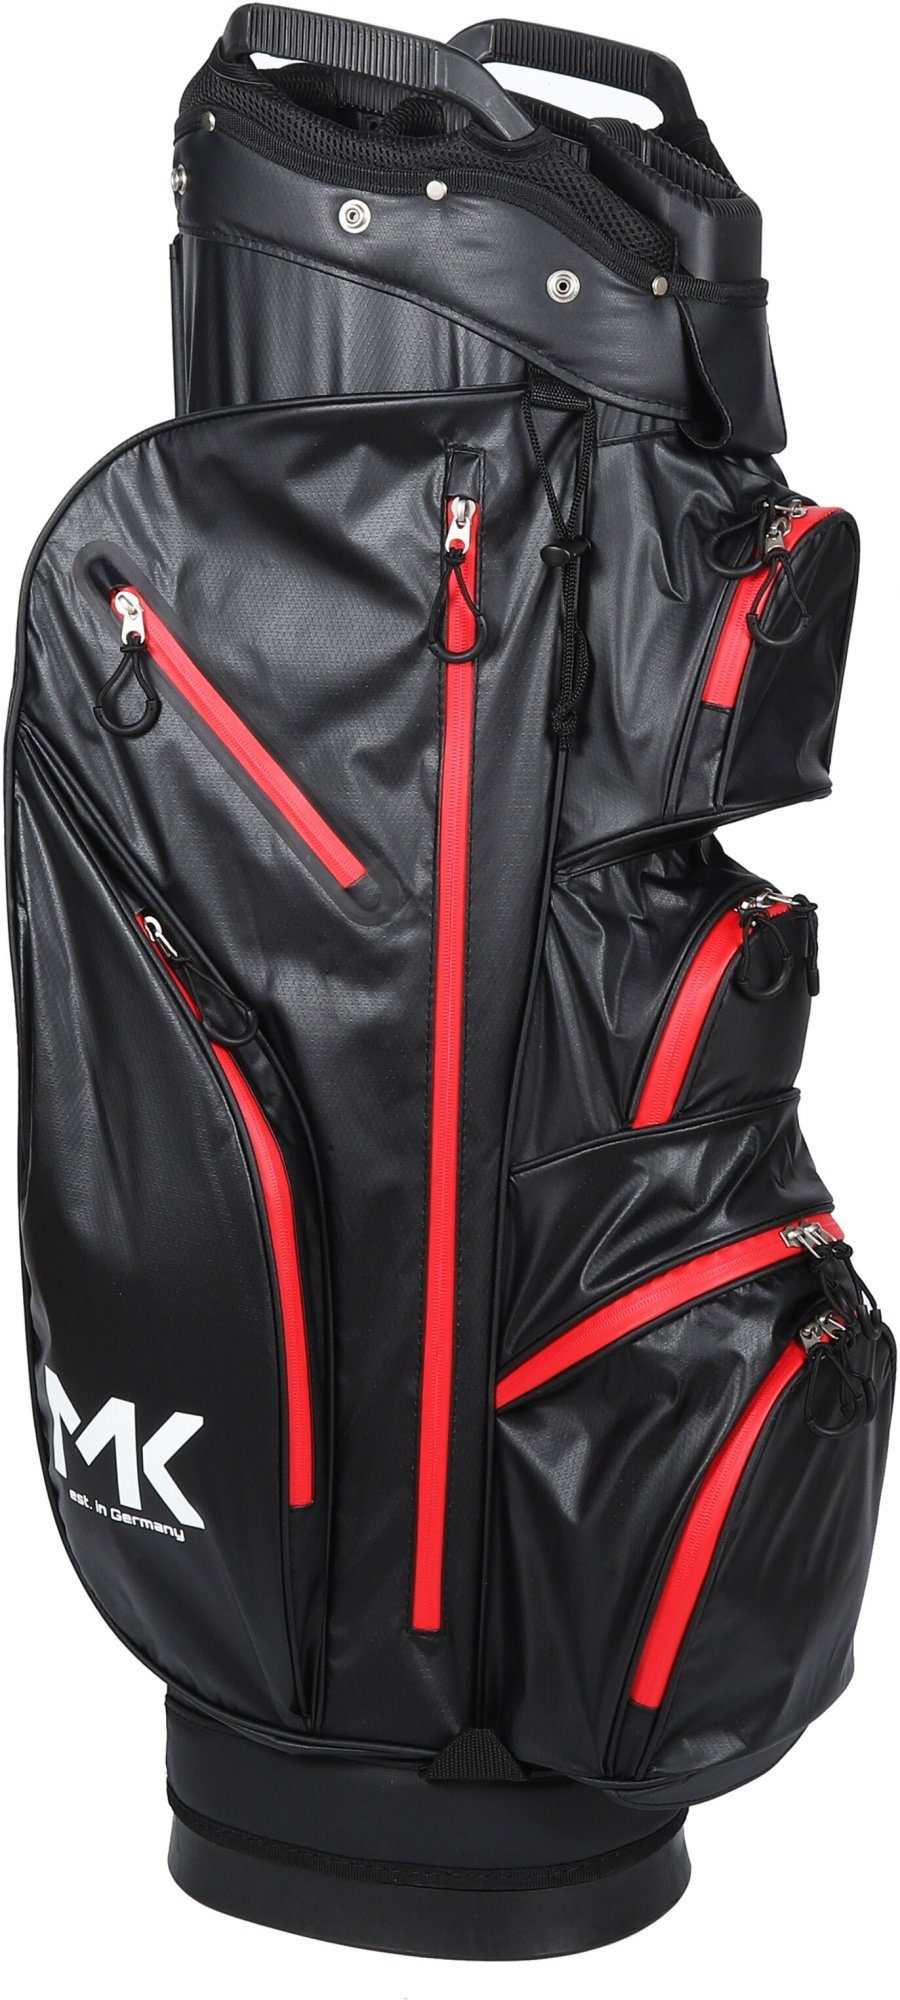 MK Golf Golftrolley + Golfbag MK Golf Equipment Solid Tour Trolleybag Rot - Golftasche, wasserdicht